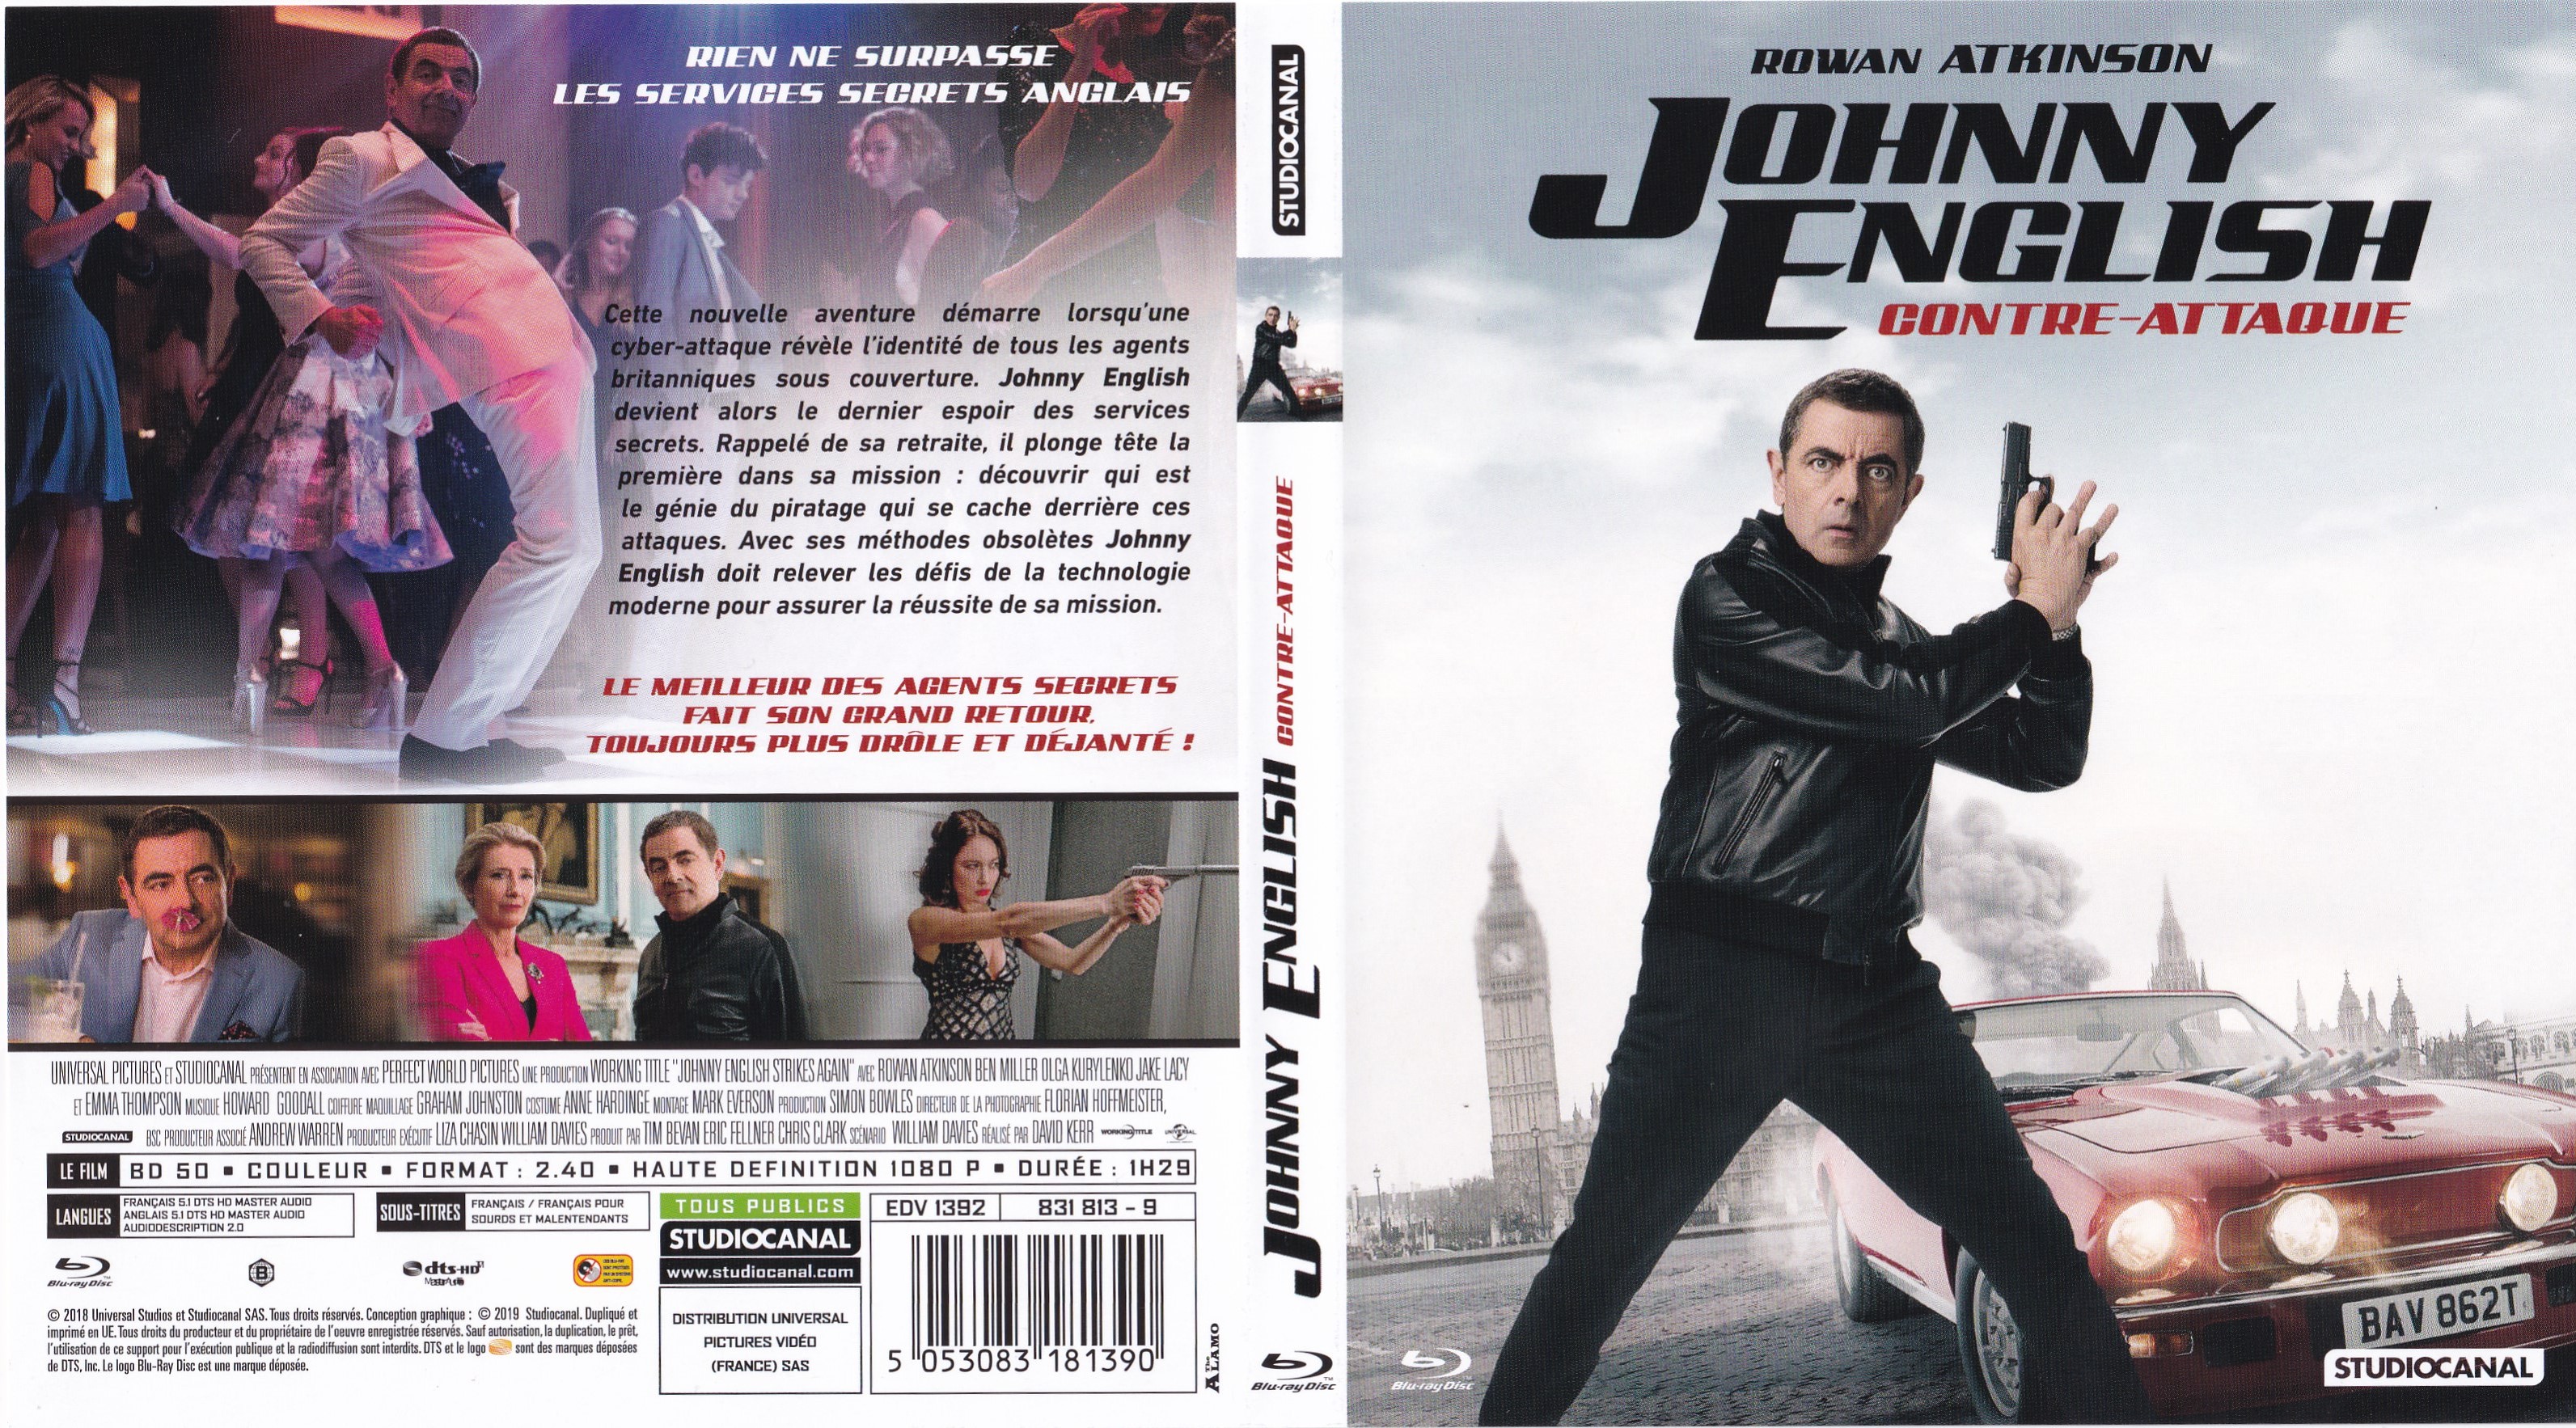 Jaquette DVD Johnny English Contre-Attaque (BLU-RAY)